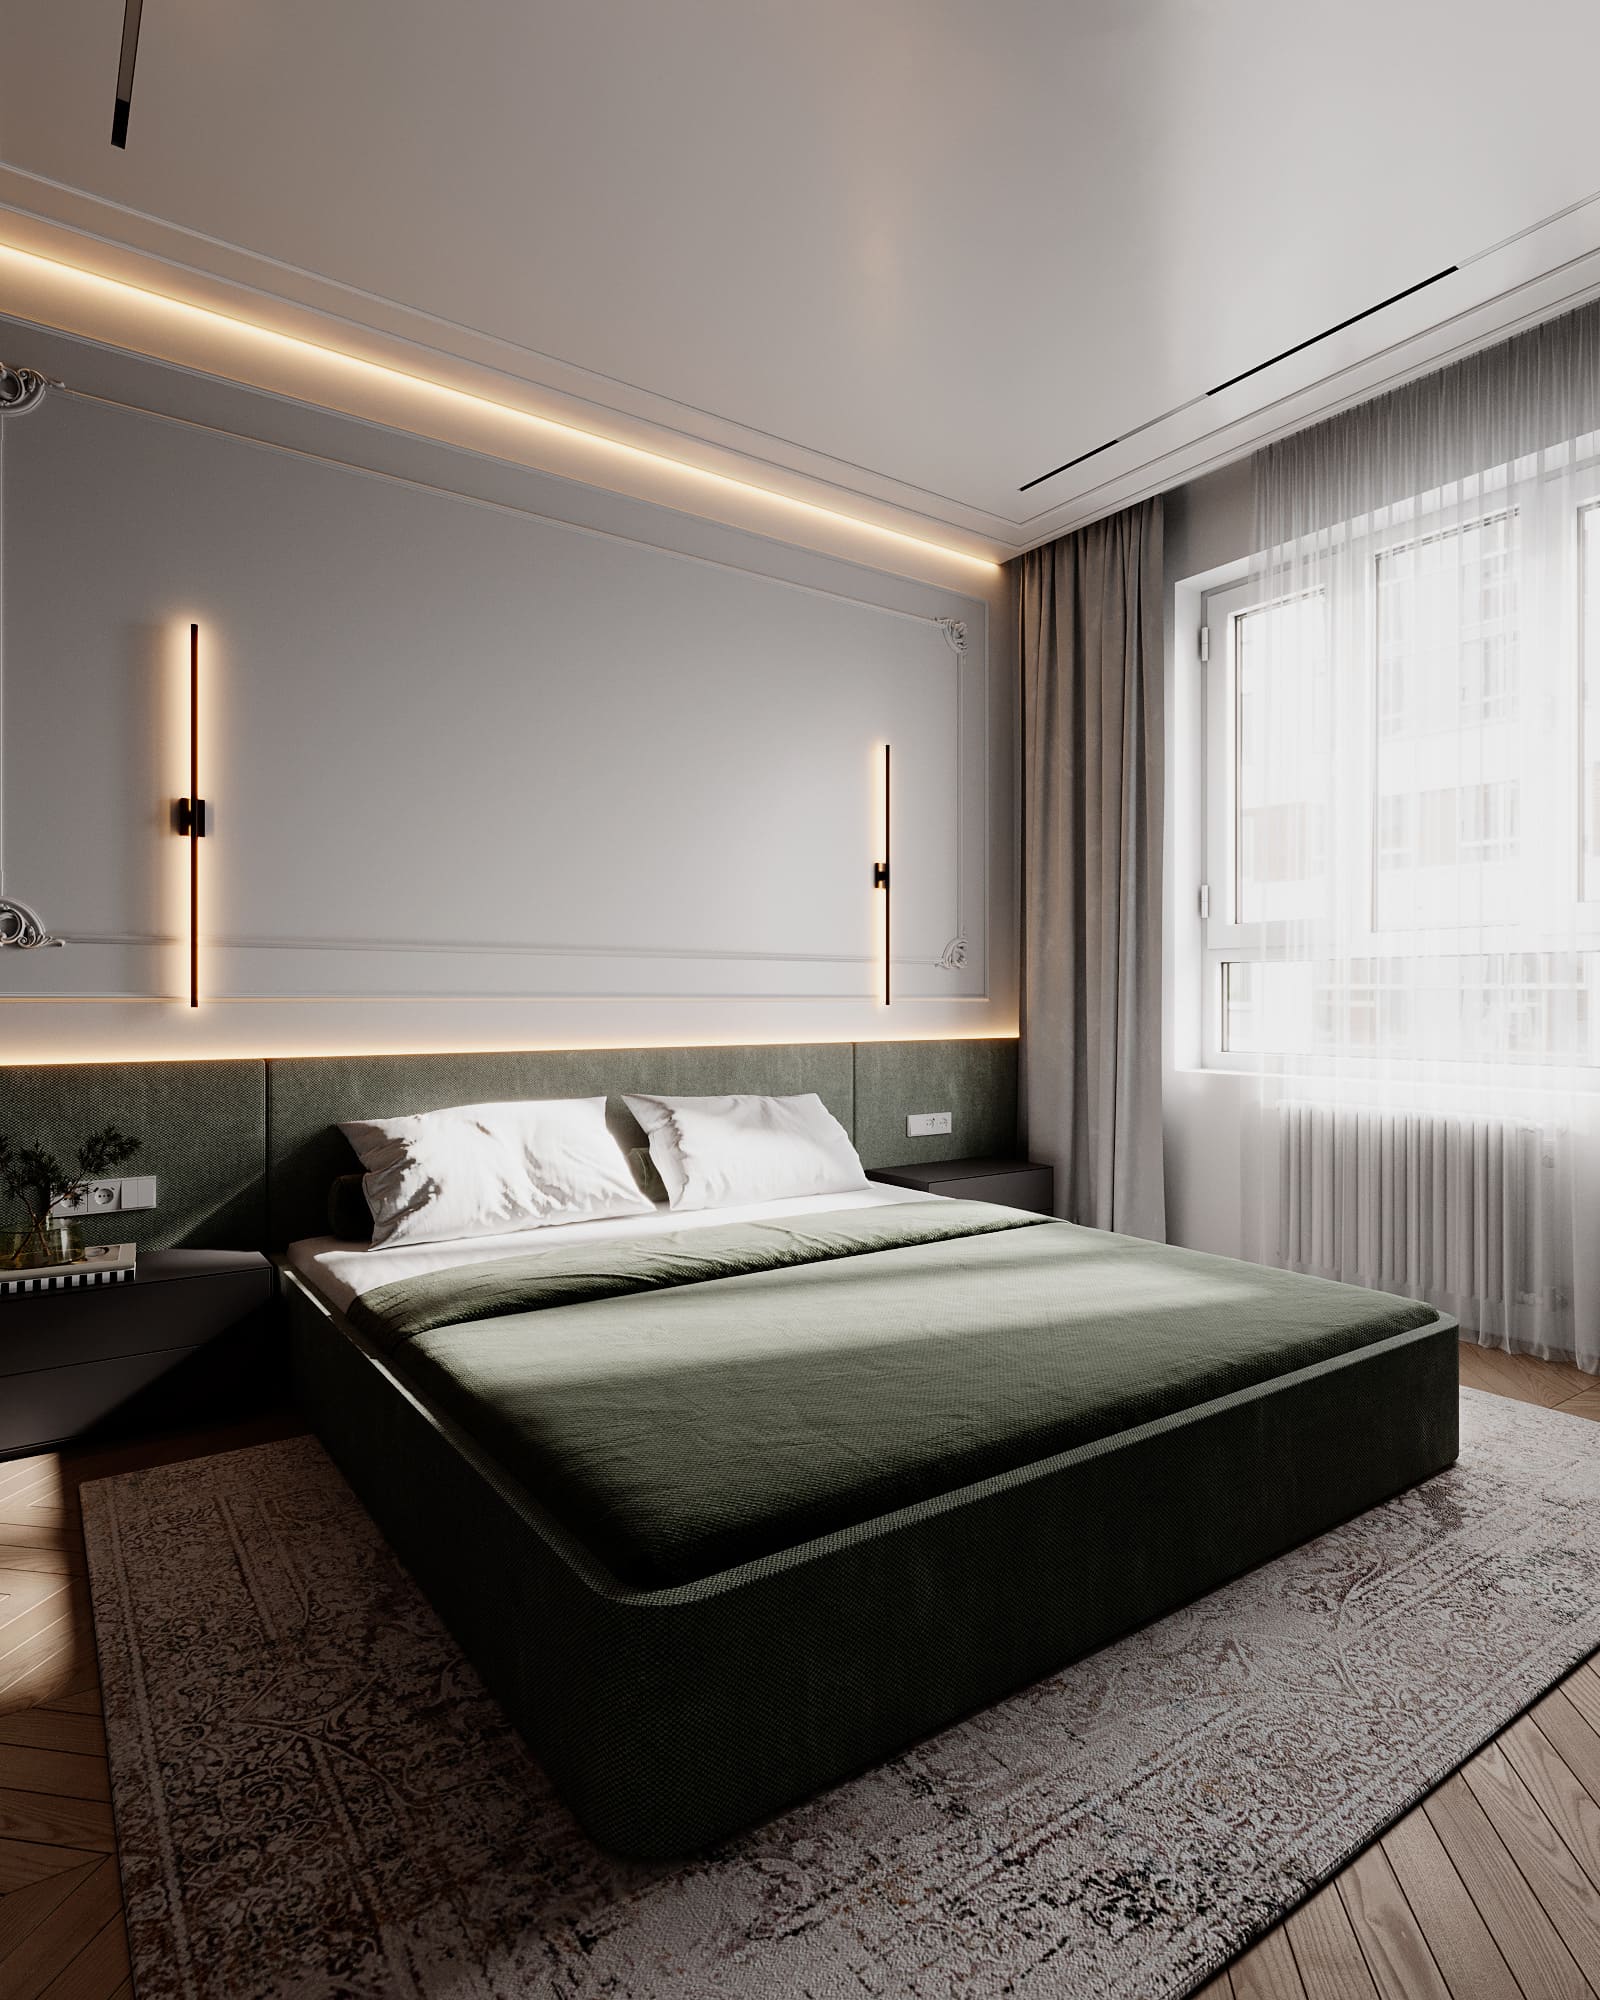 Престижная светлая квартира в стиле минимализм, спальня, фото 53